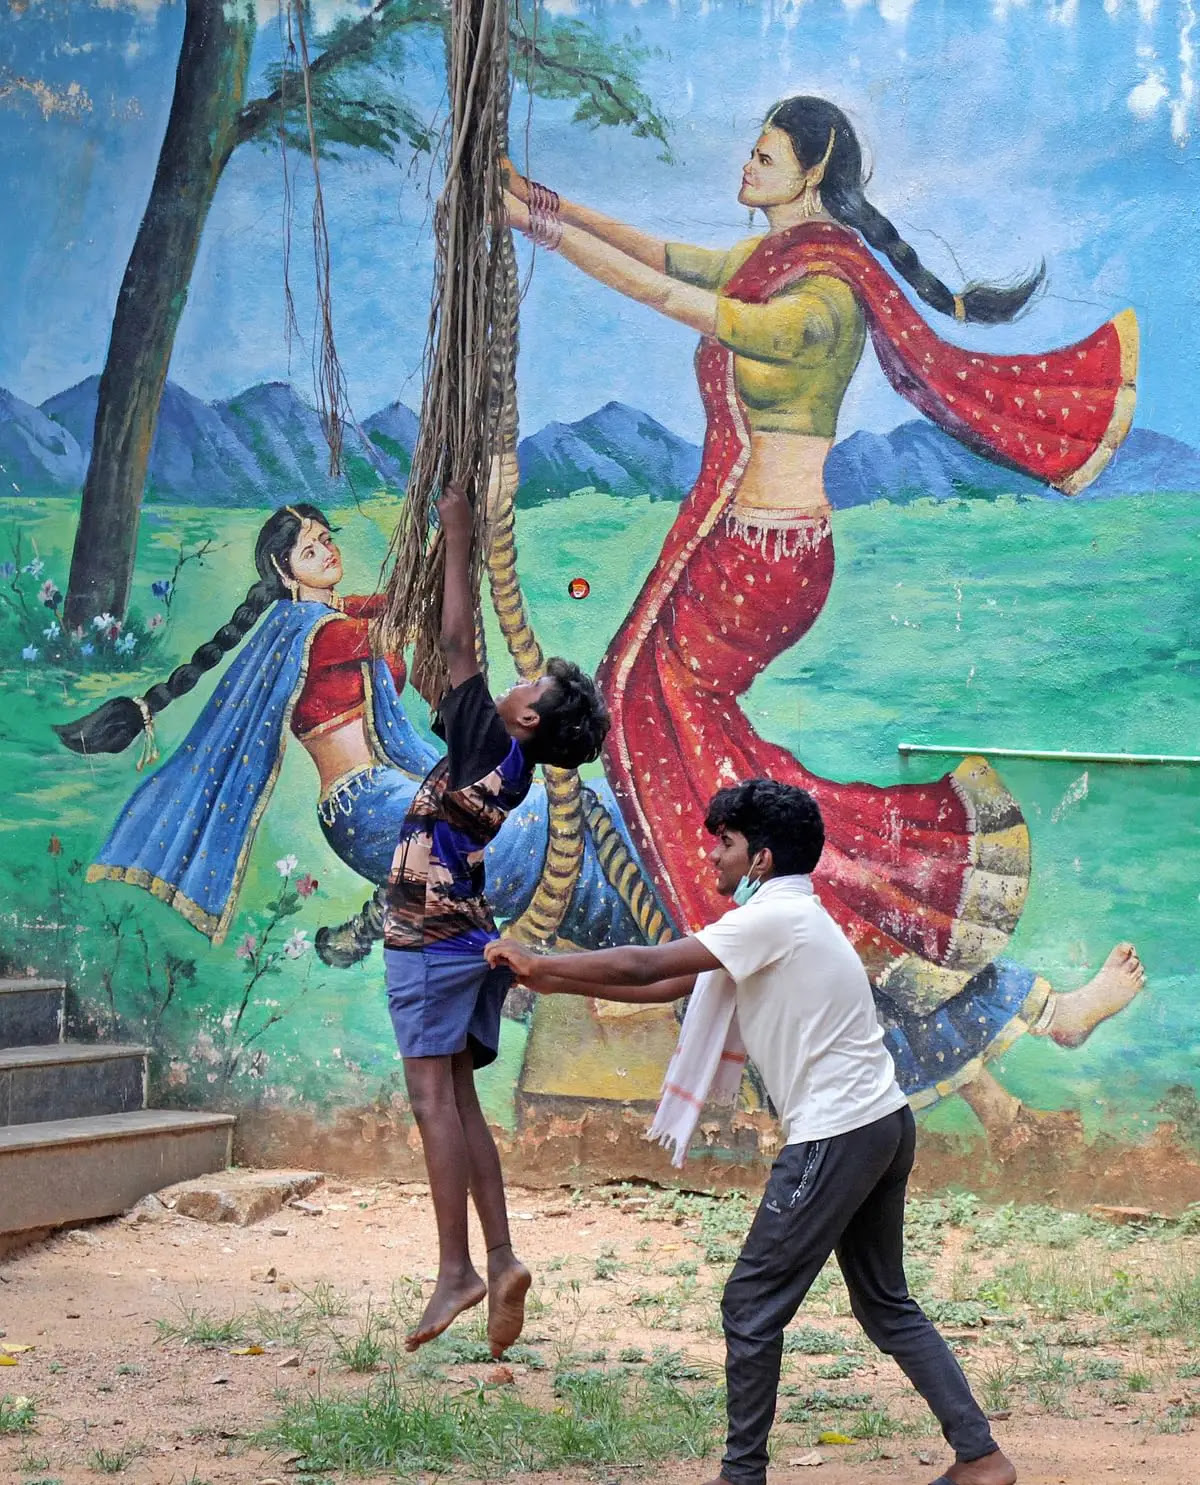 लॉकडाउन के दौरान बेंगलुरु में एक दीवार पर चित्रित म्यूरल के सामने खेलते हुए बच्चे.